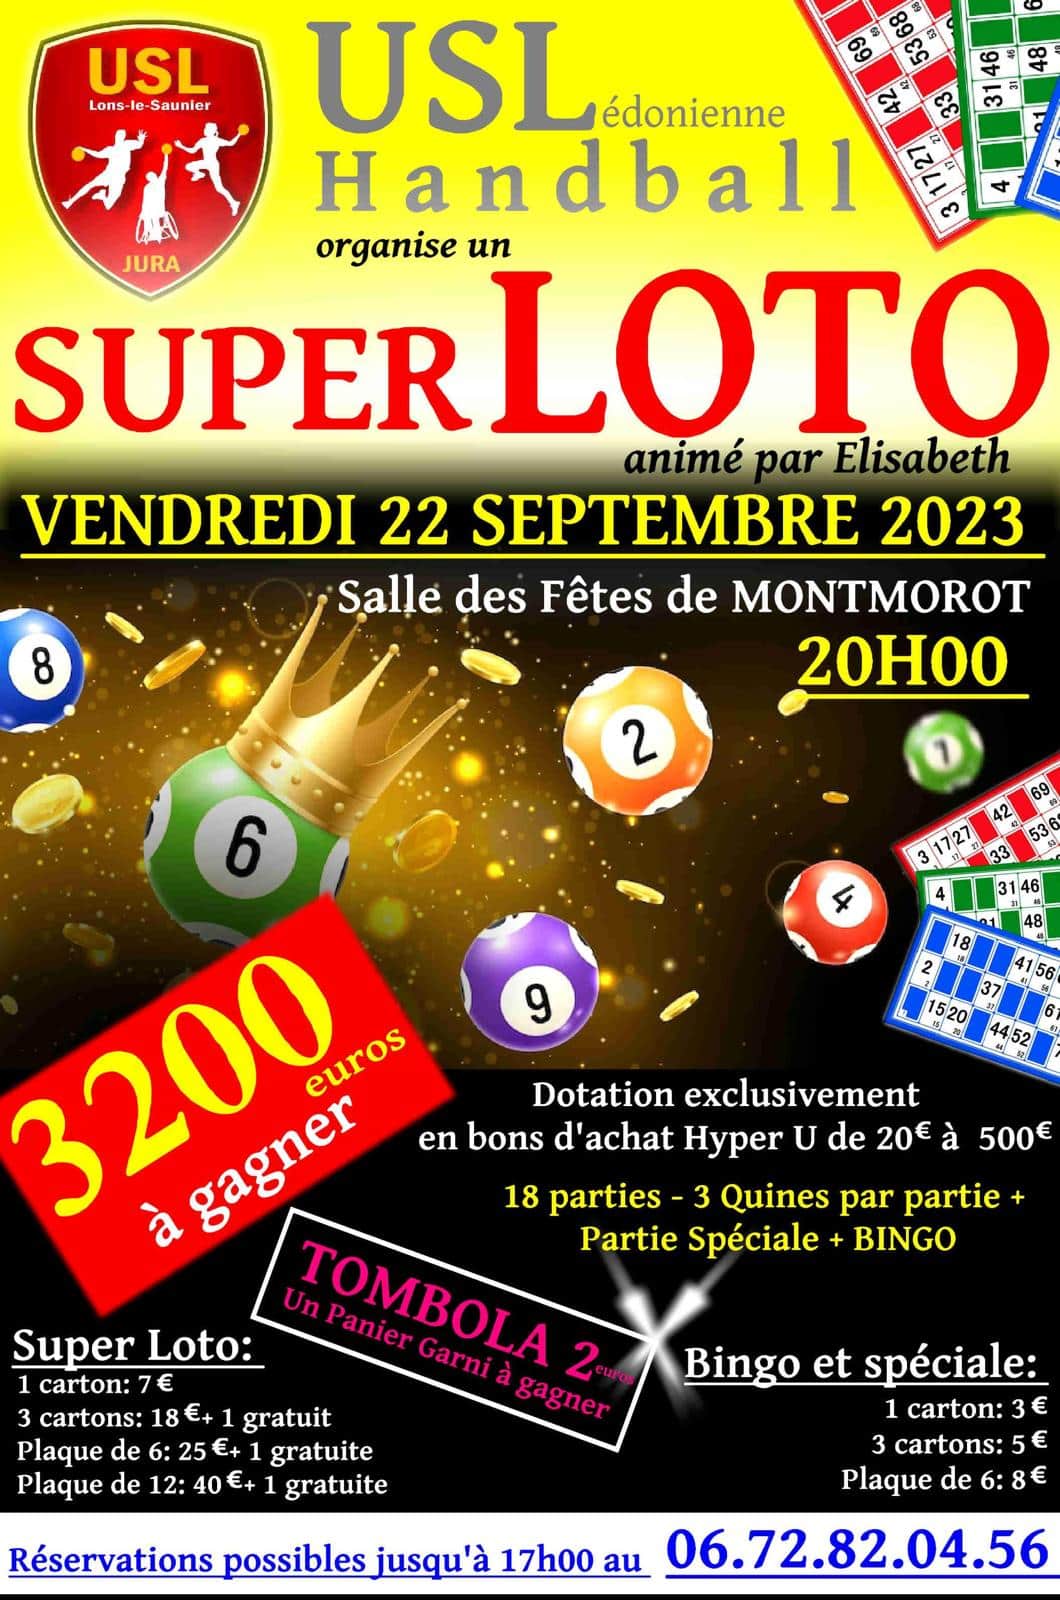 Loto Vendredi 23 Septembre 2023 Super Loto 23/09/23 | USL Handball